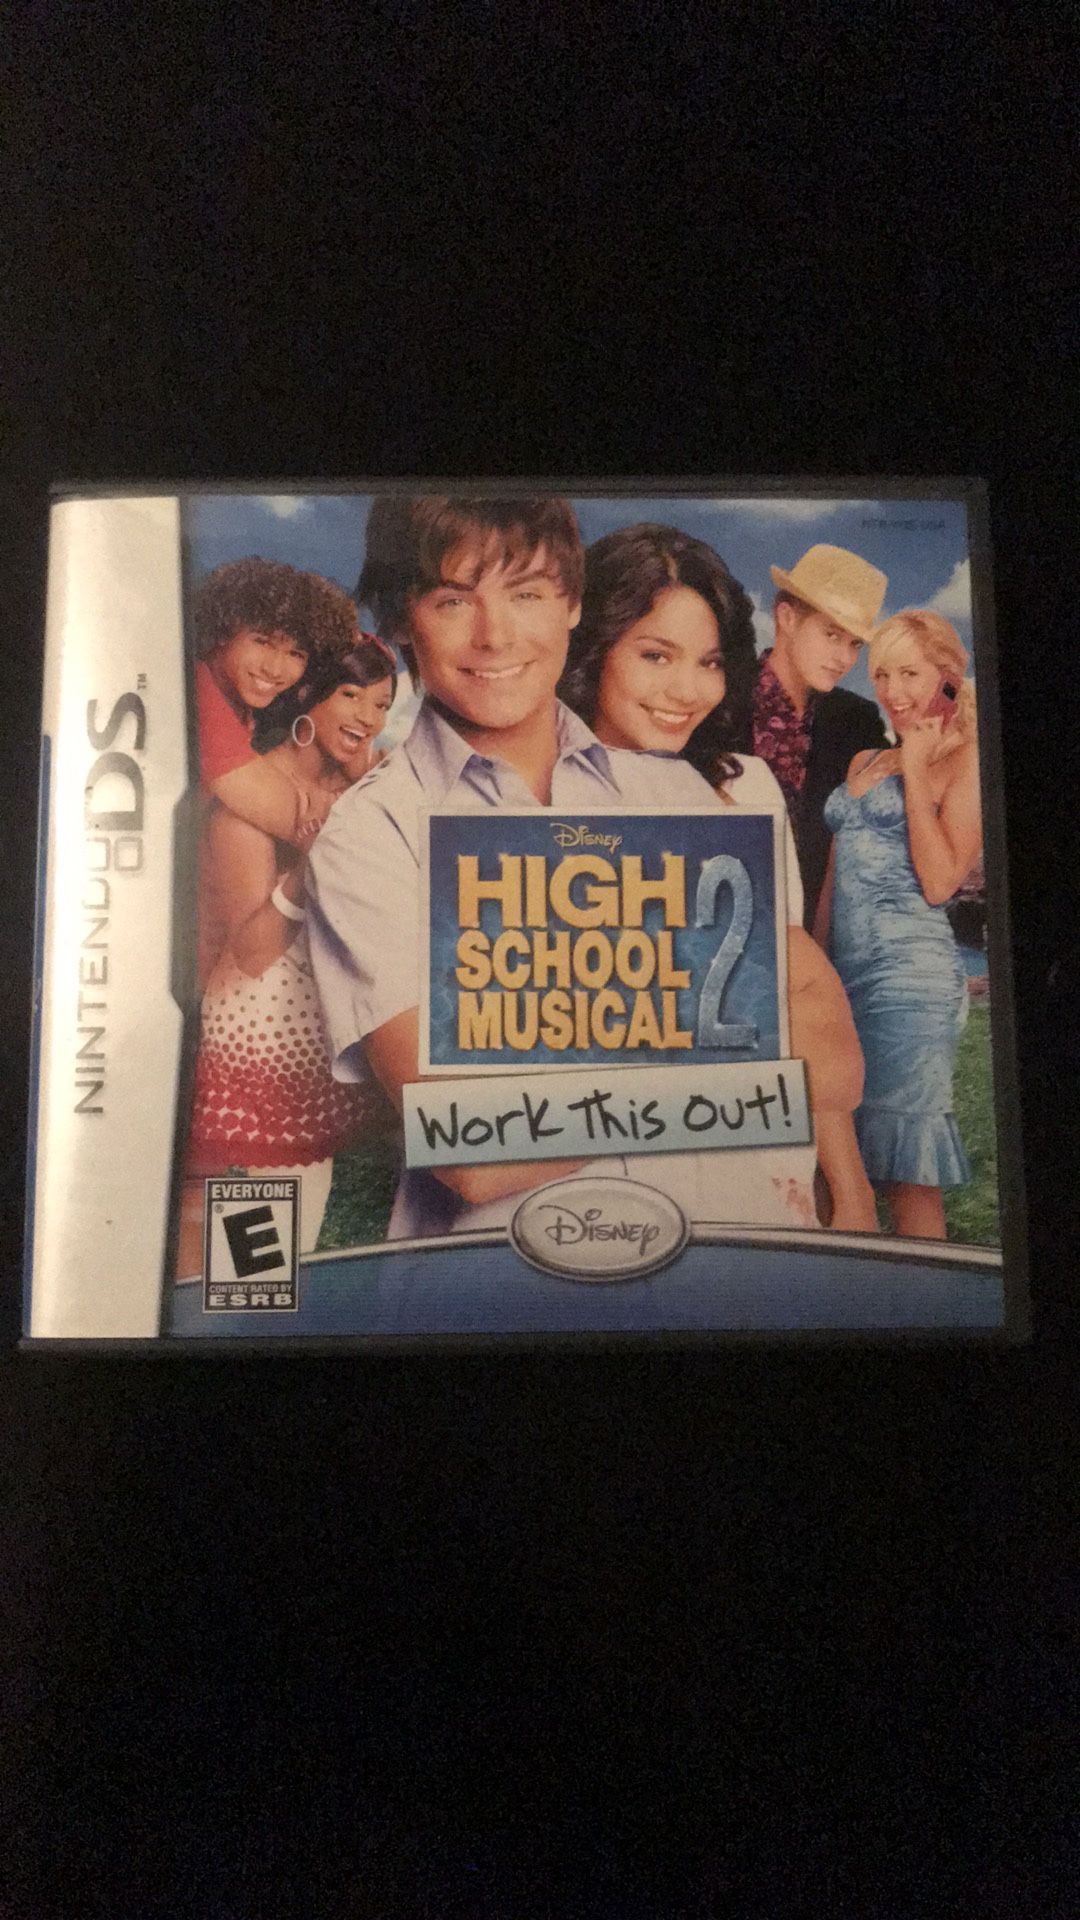 Nintendo DS “High school musical 2”